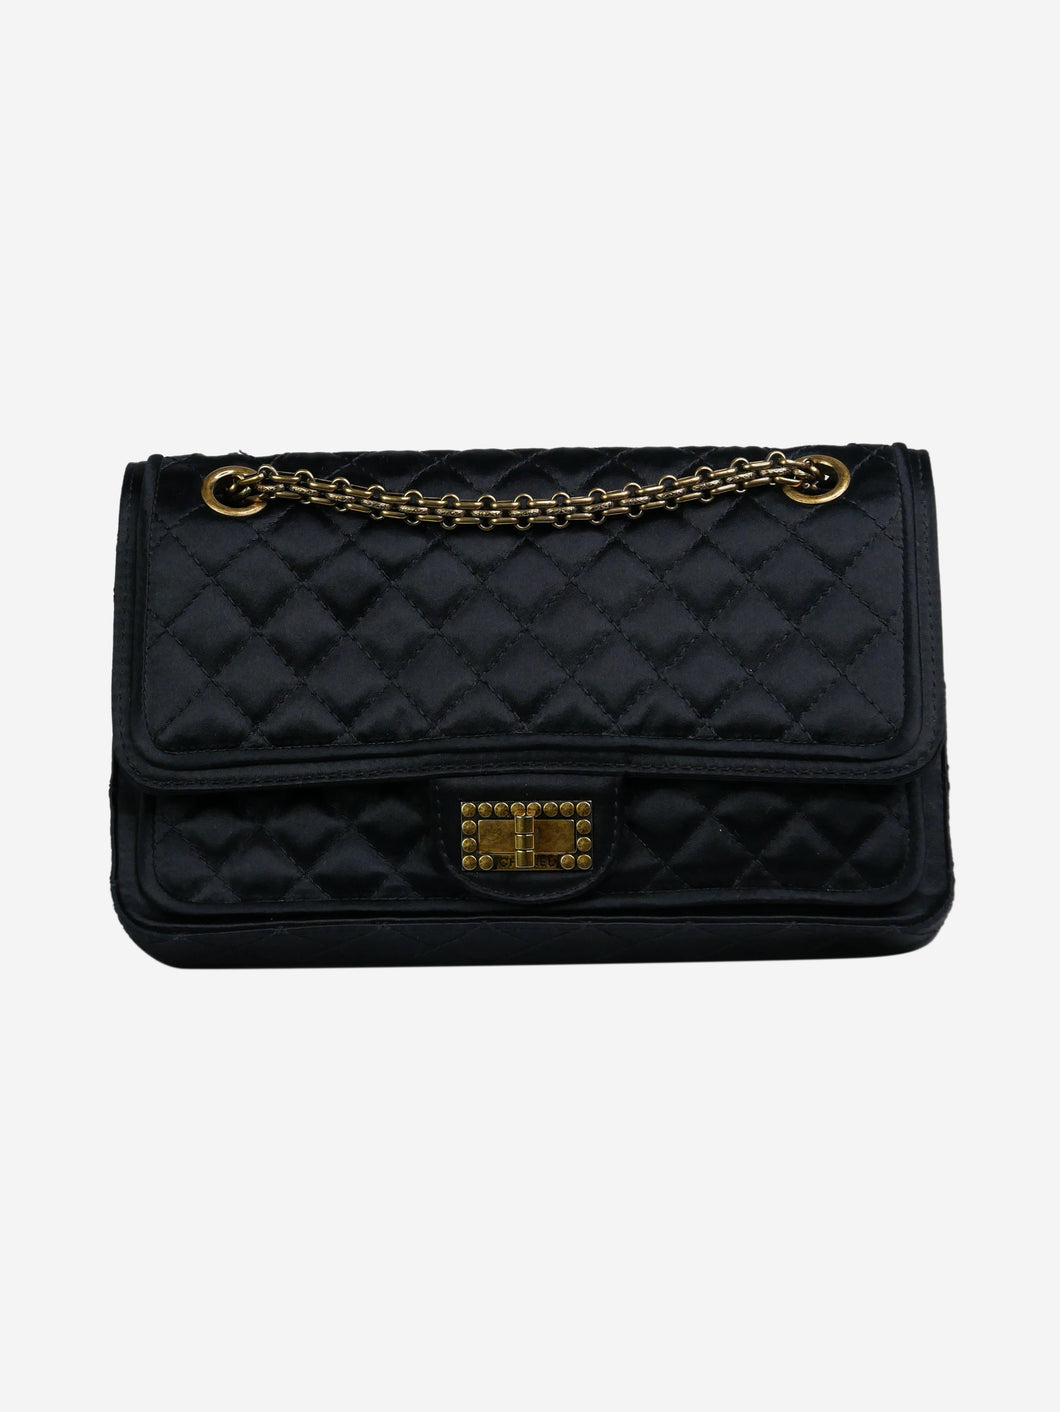 Black medium 2009-2010 2.55 gold hardware flap bag Shoulder bags Chanel 